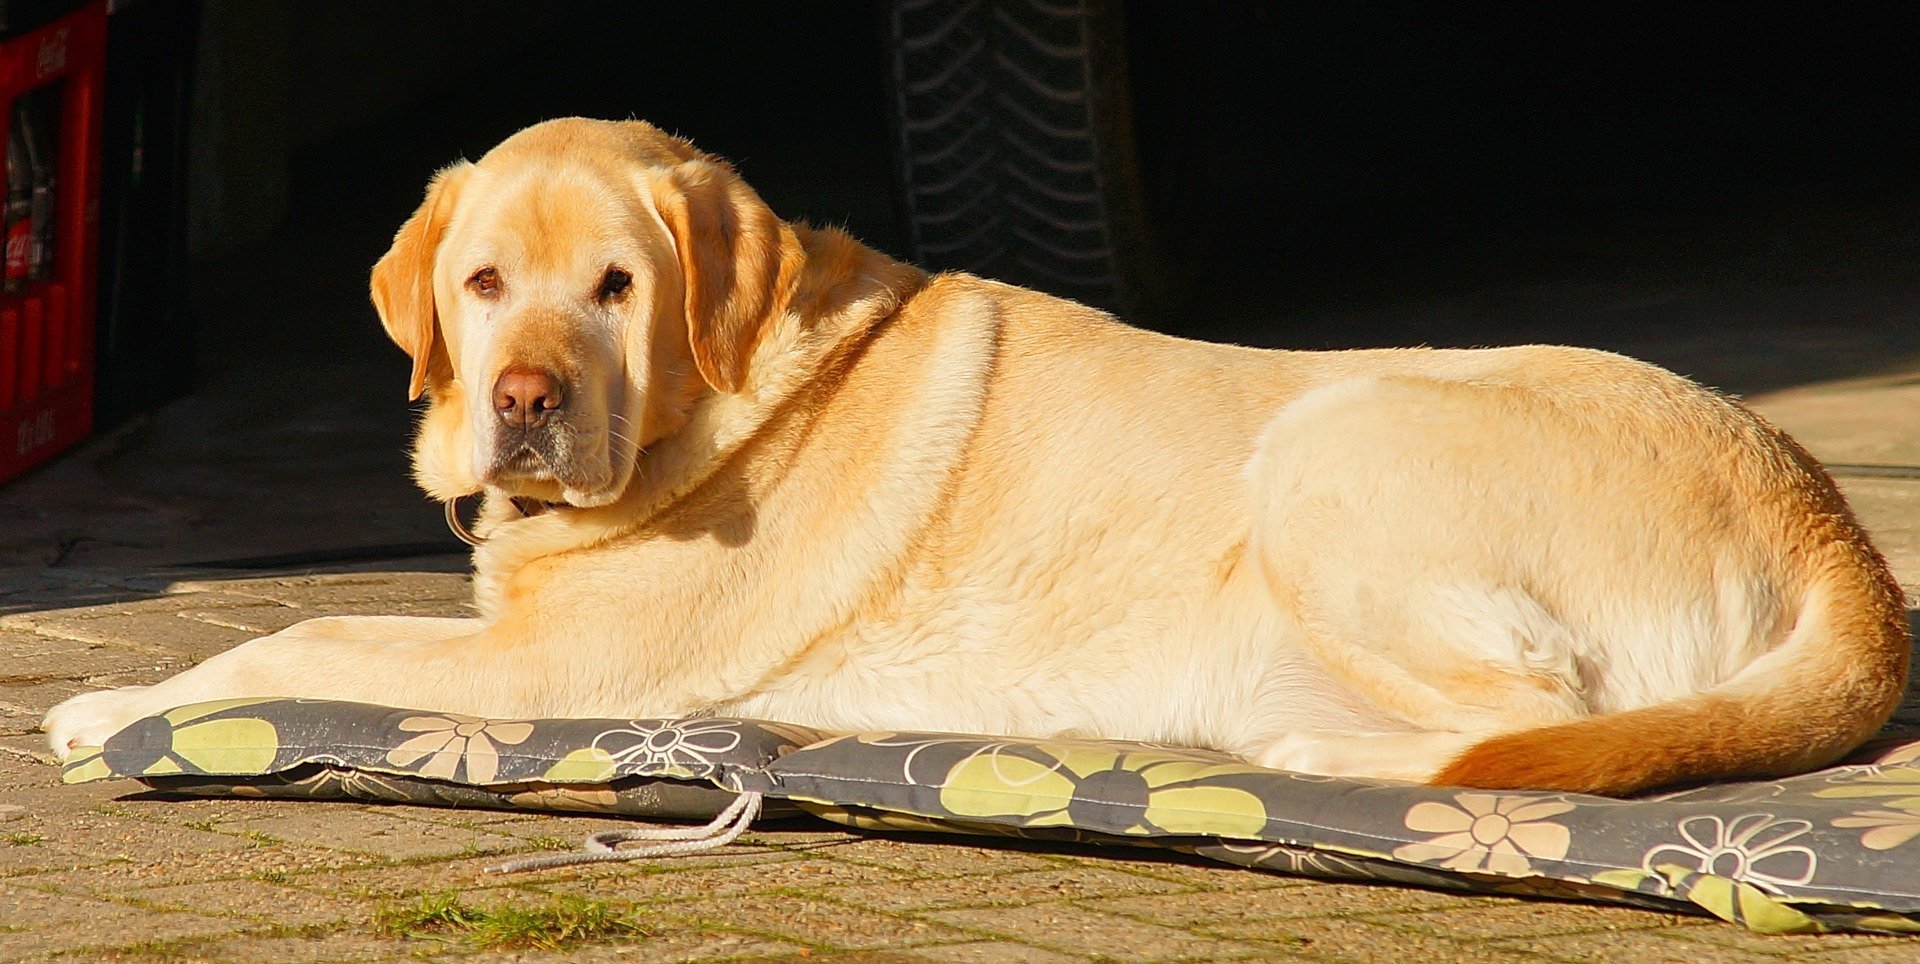 Labrador descansando sobre una estera. | Foto: Pixabay